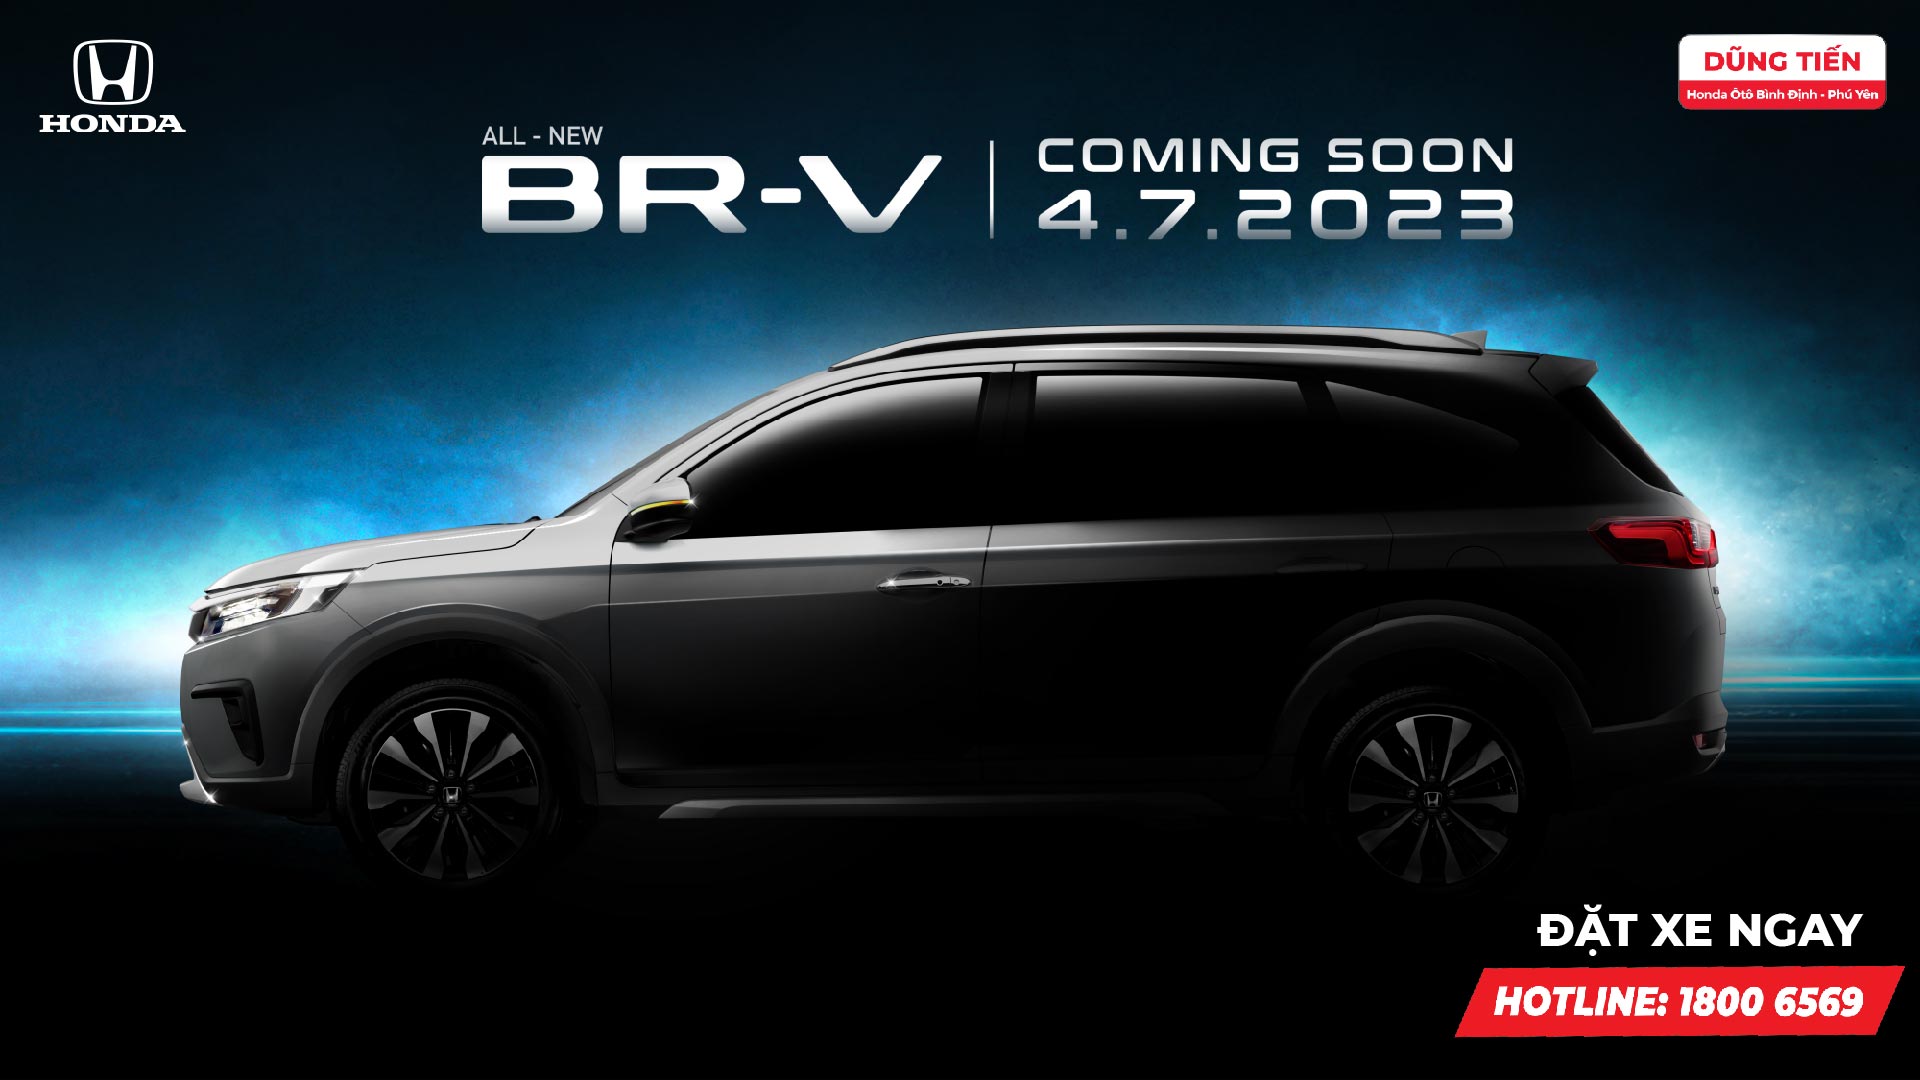 Dũng Tiến - Honda Ôtô Bình Định - Phú Yên chính thức nhận cọc Honda BR-V 2023